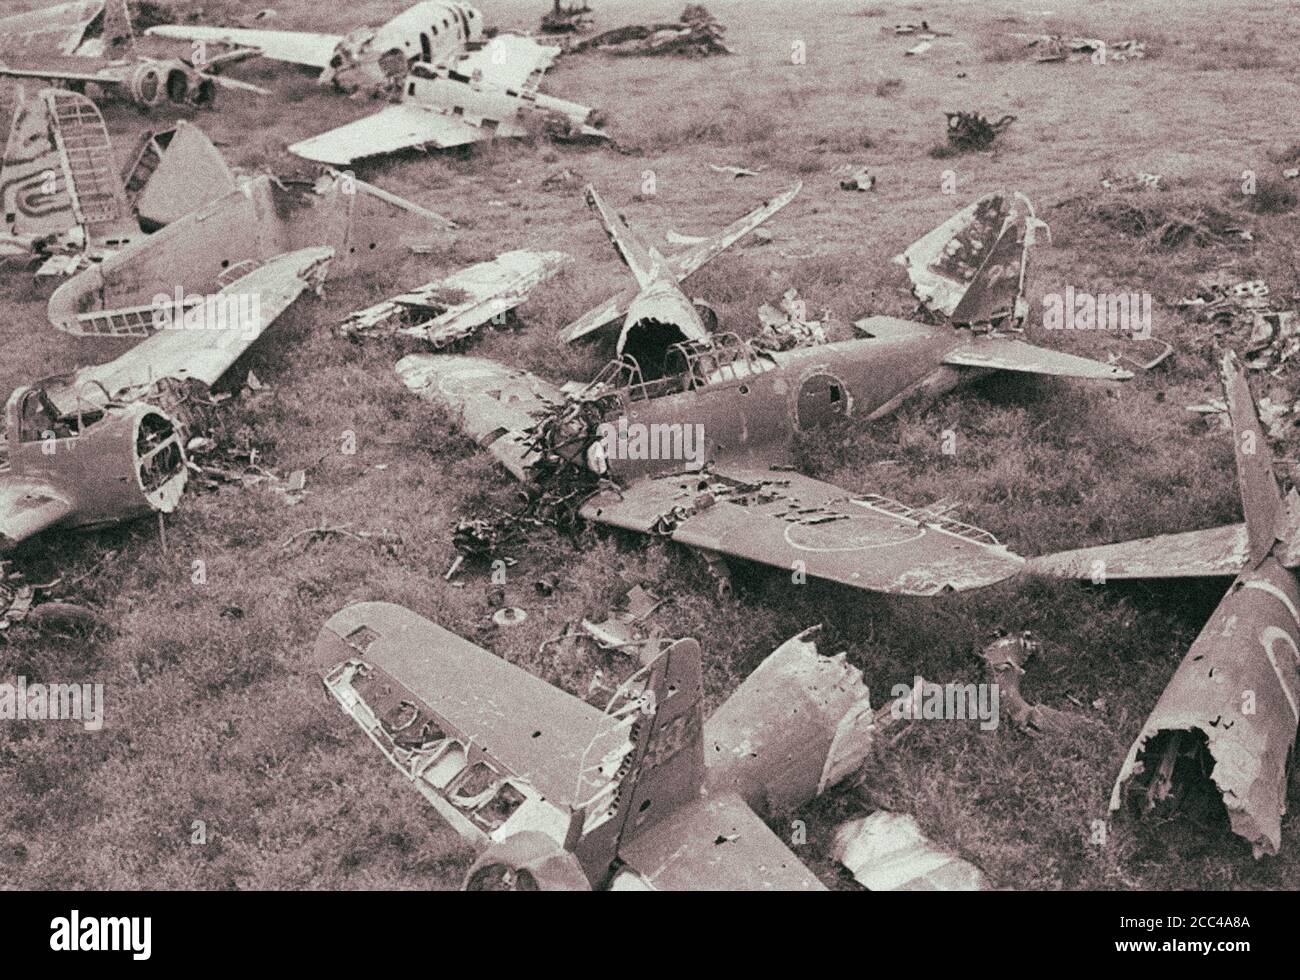 Das Wrack der abgestürzten japanischen Flugzeuge – Mitsubishi A6M Zero und Nakajima Ki-43 Hayabusa-Kämpfer. Stockfoto